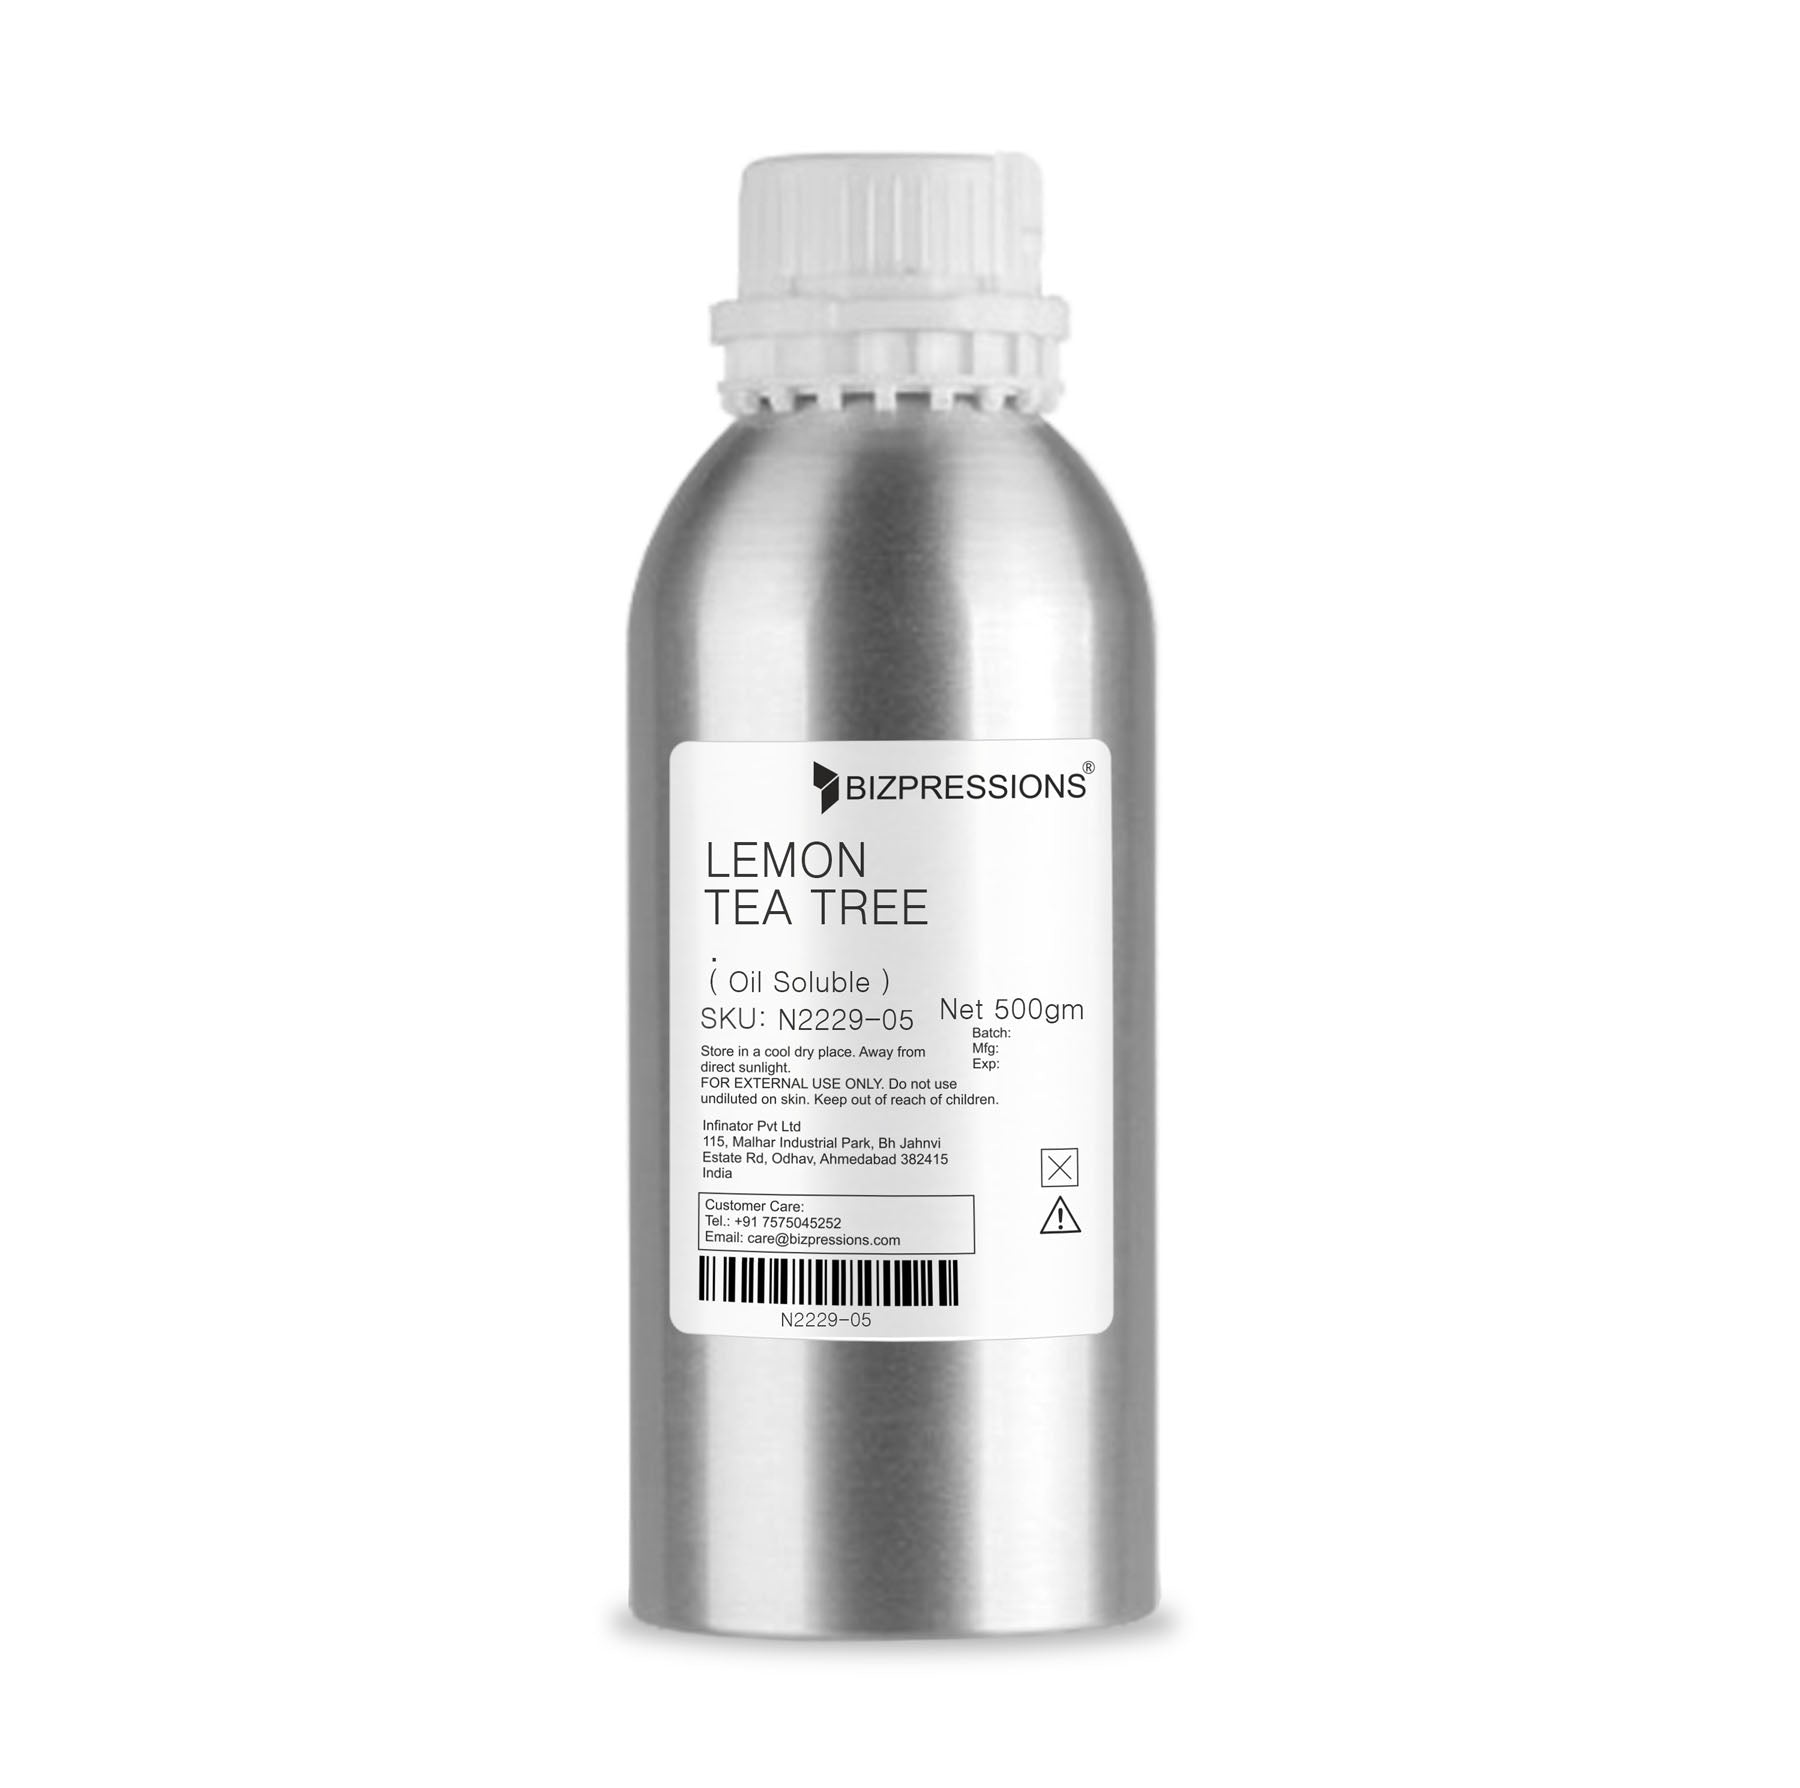 LEMON TEA TREE - Fragrance ( Oil Soluble ) - 500 gm